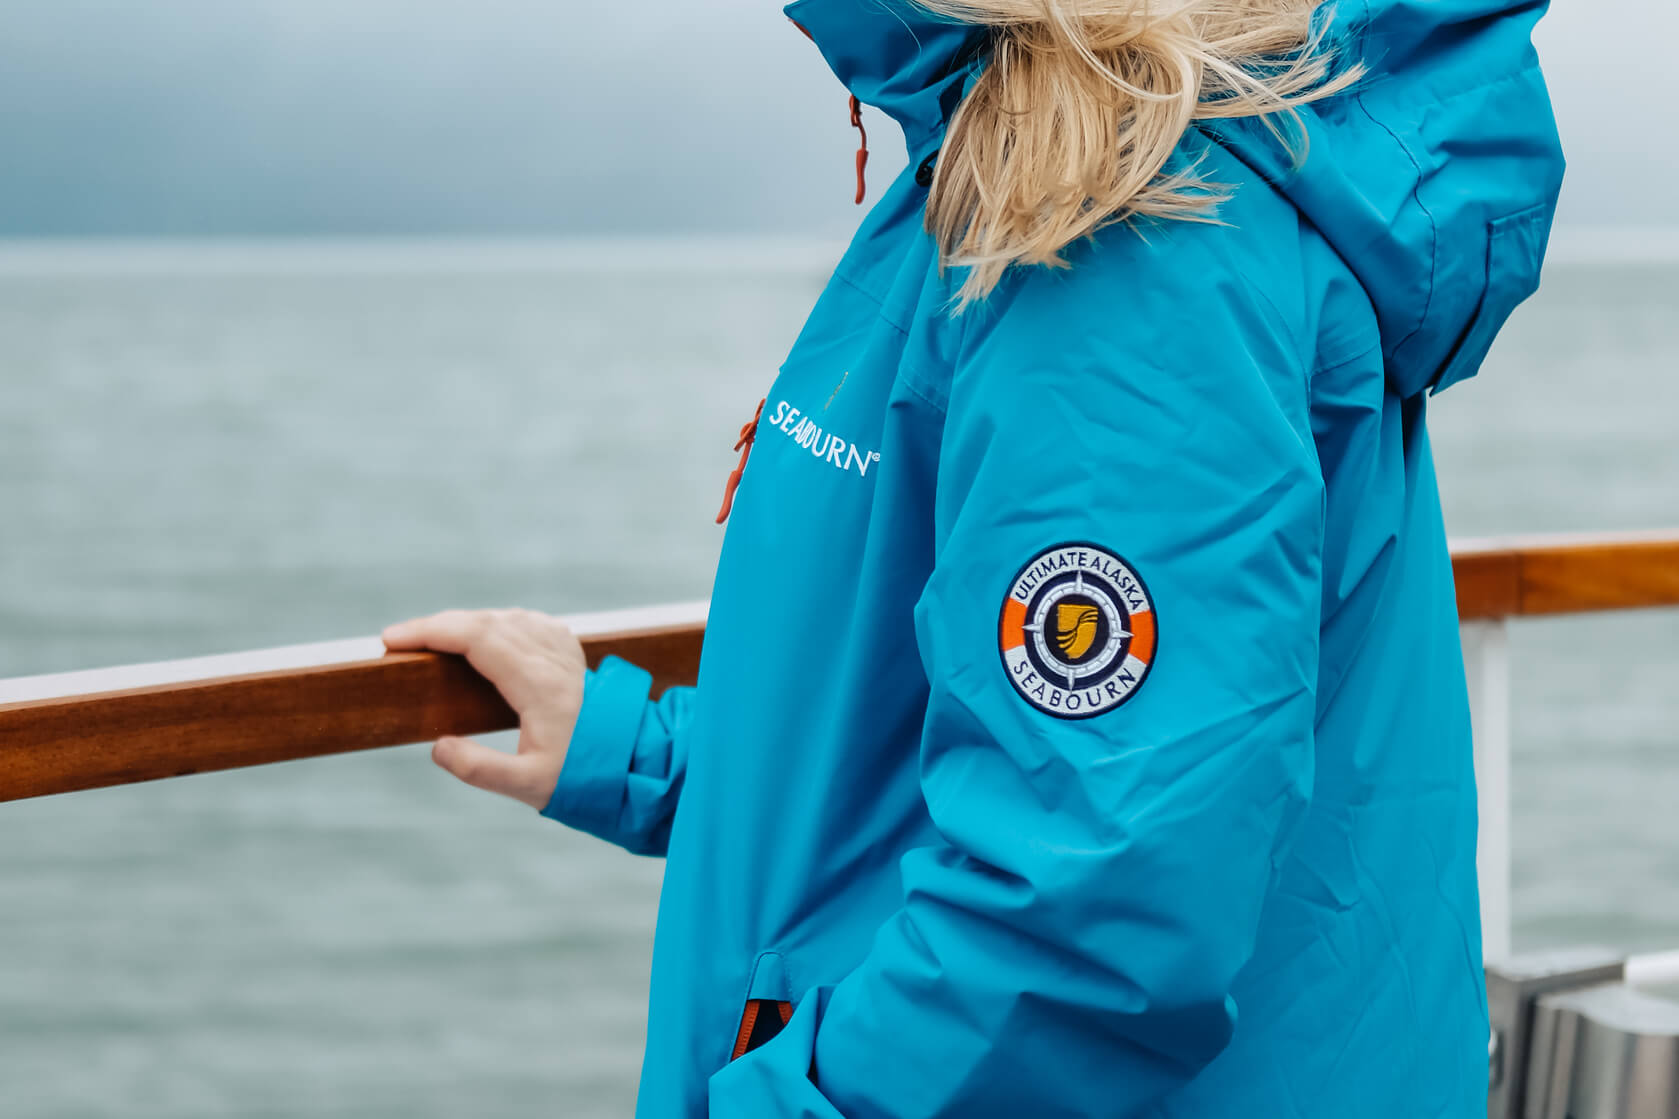 Seabourn jacket with logo